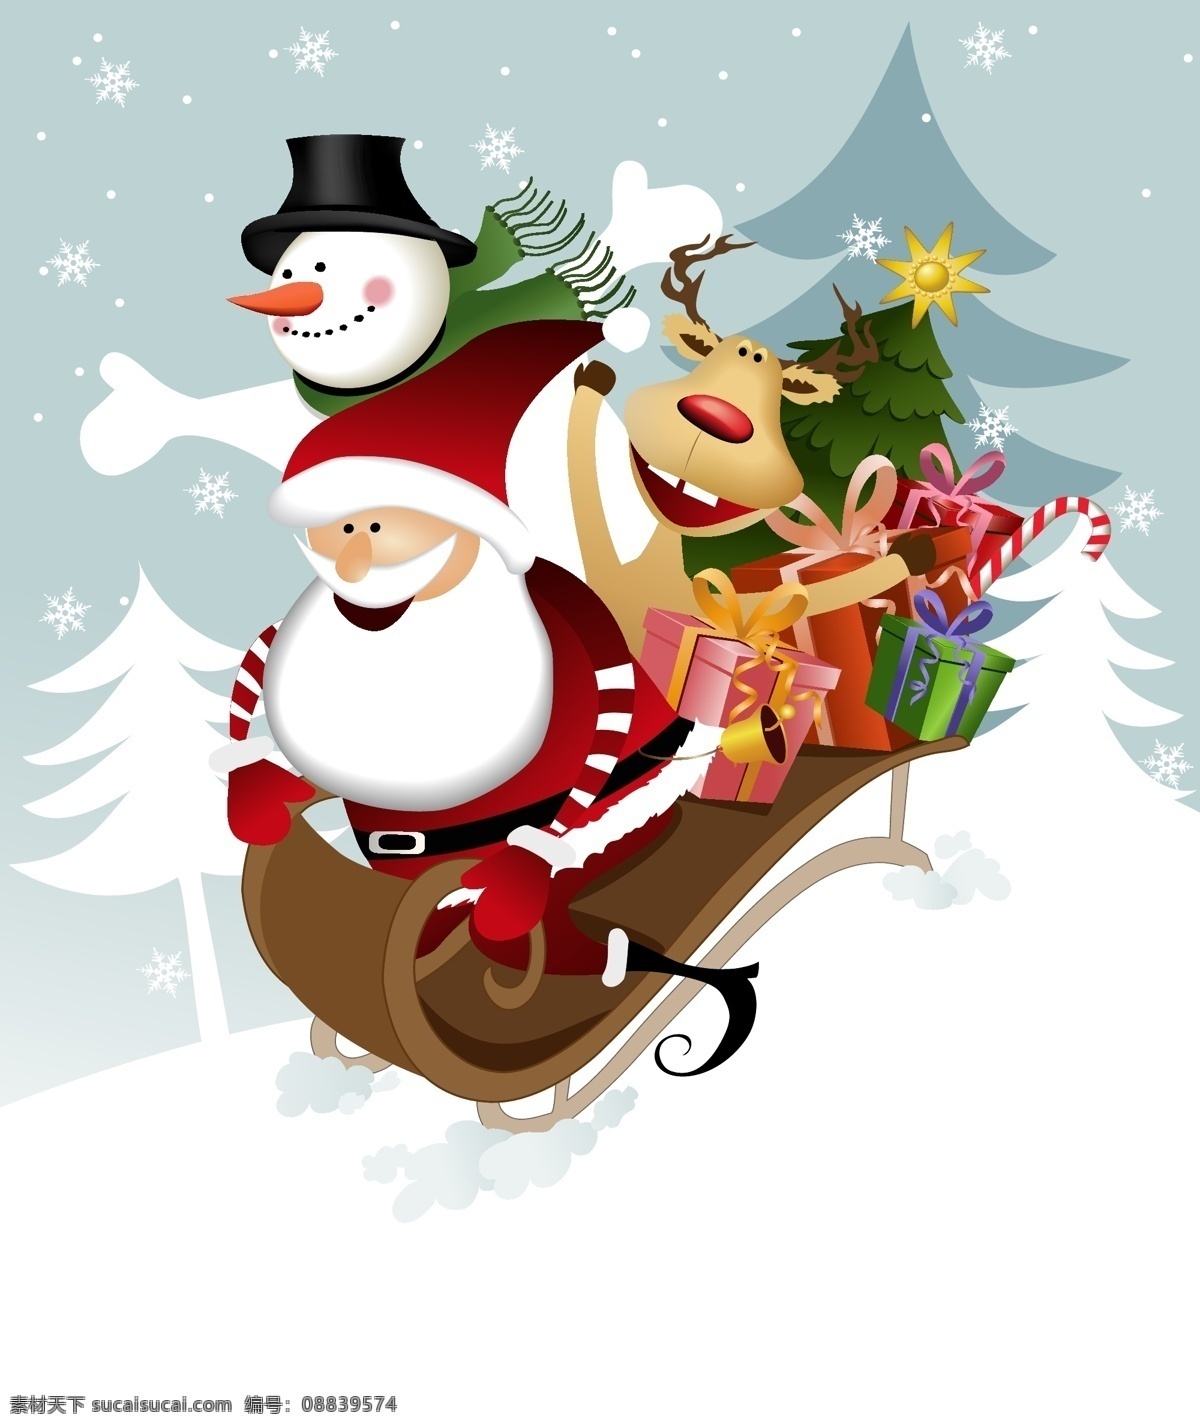 可爱 圣诞 雪人 元素 矢量 集 可爱的 矢量节日 psd的 节日素材 其他节日